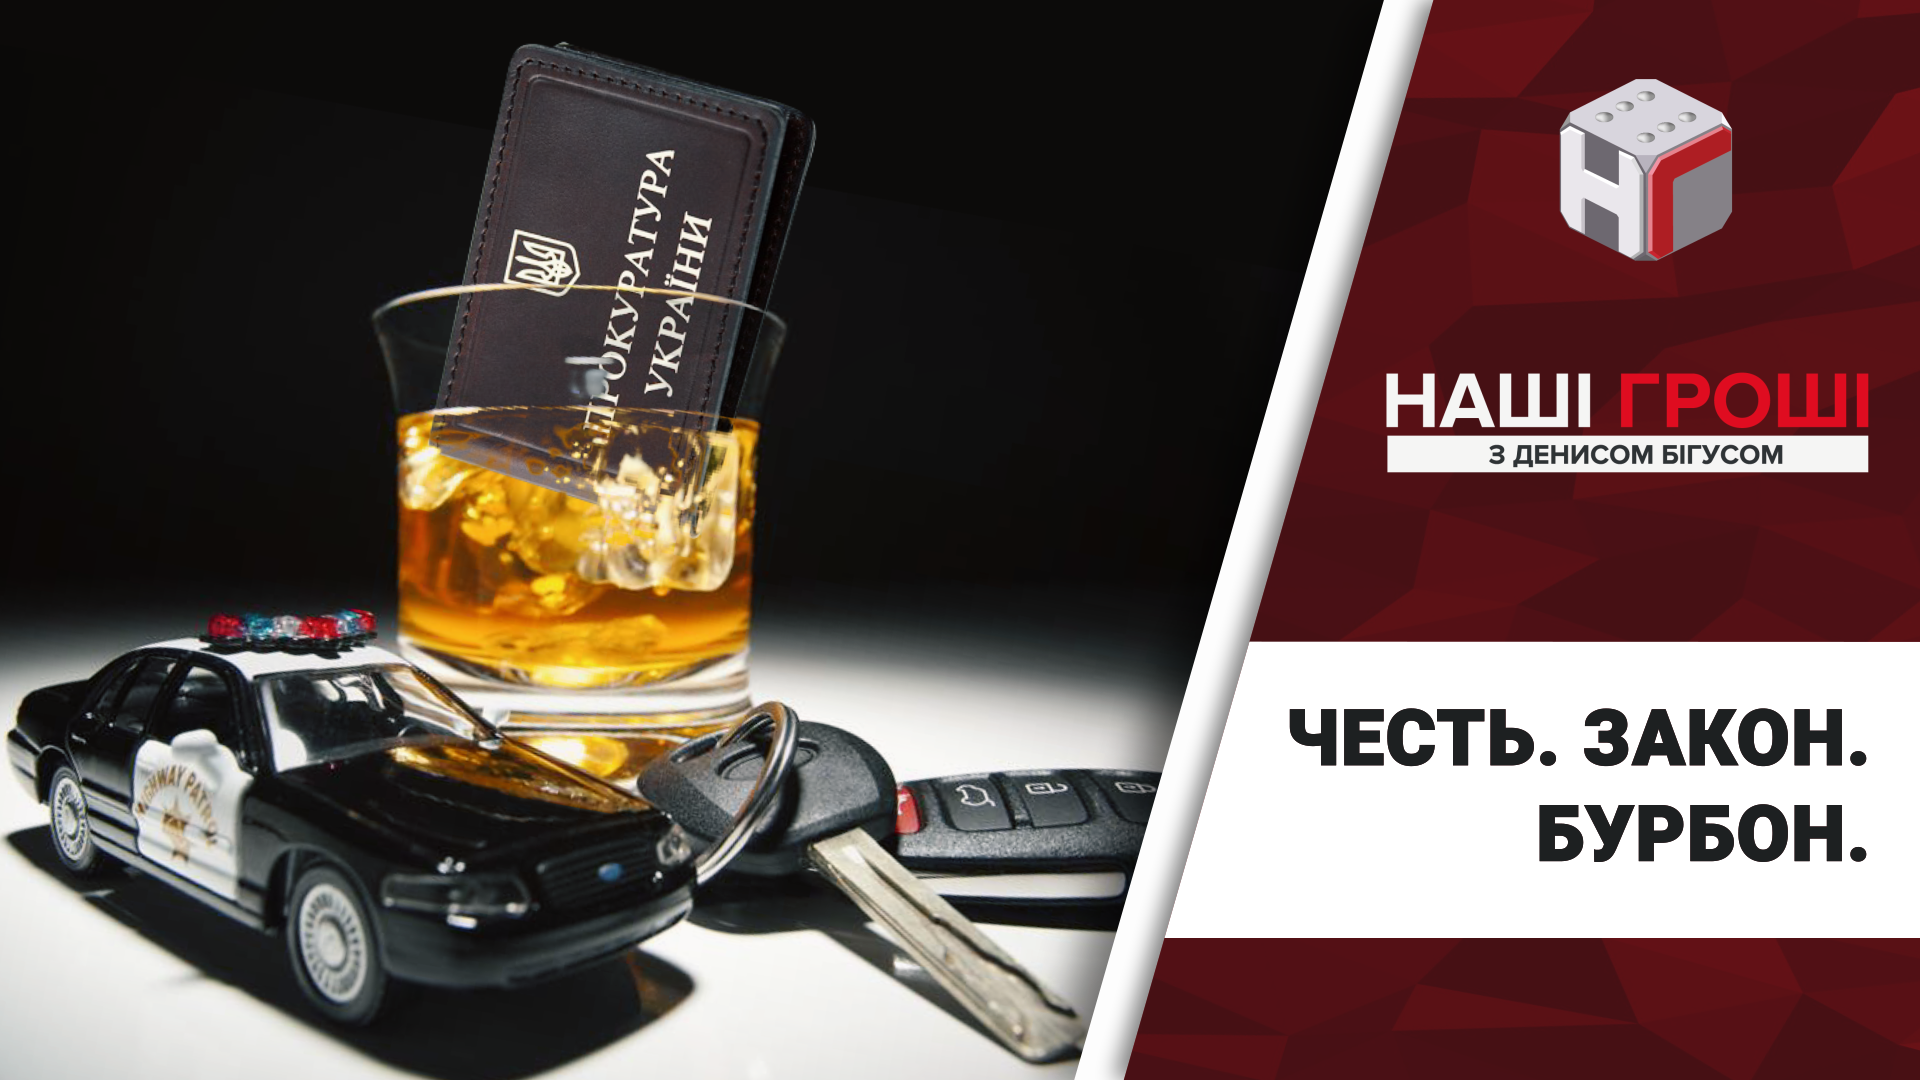 Головний "по етиці" в прокуратурі Києва, який звільняє за п'яну їзду, сам потрапив в алко-халепу